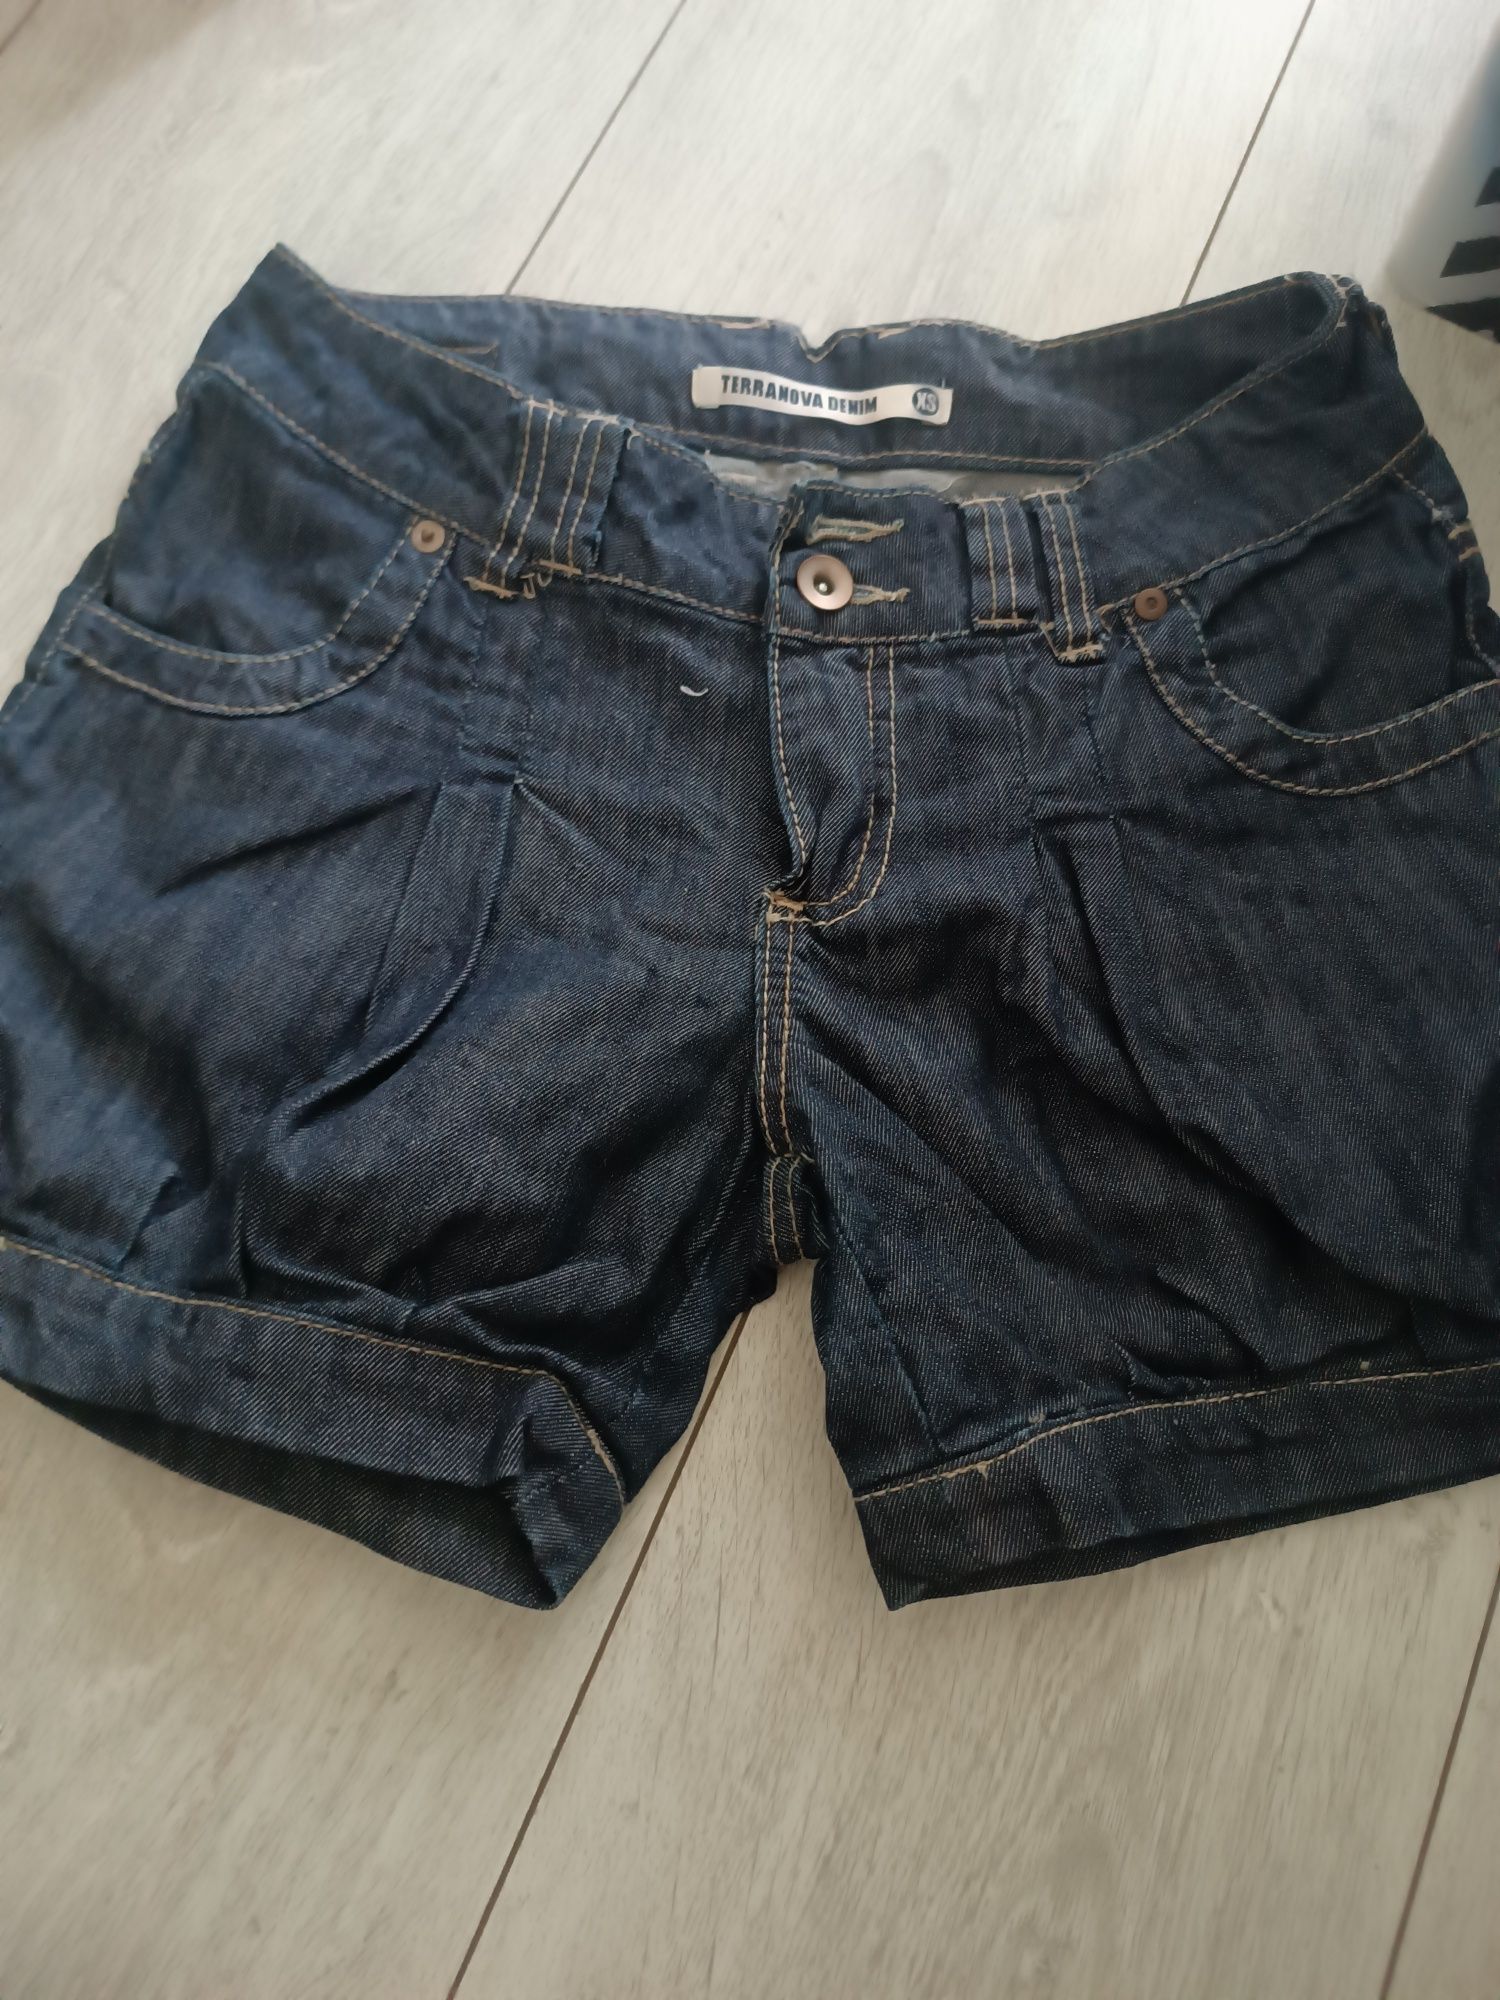 Szorty krótkie spodenki jeansowe dżinsowe xs terranova